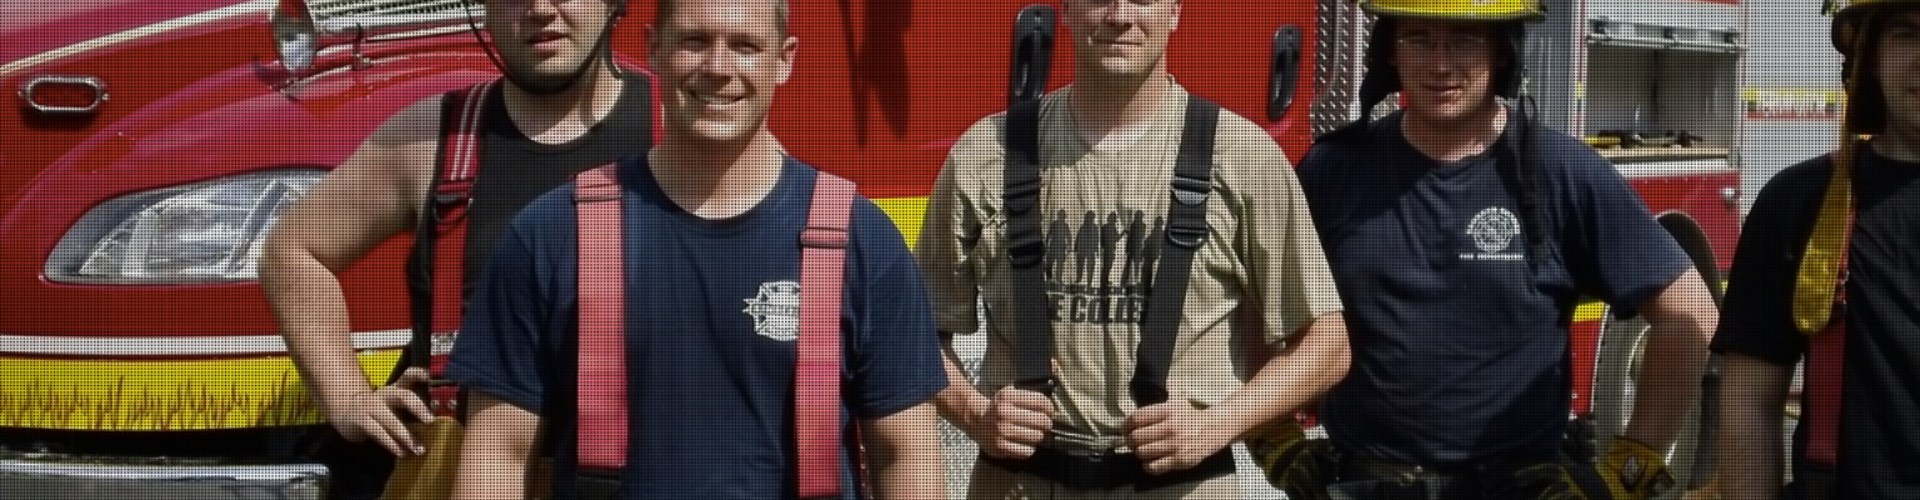 Firefighters standing near a firetruck